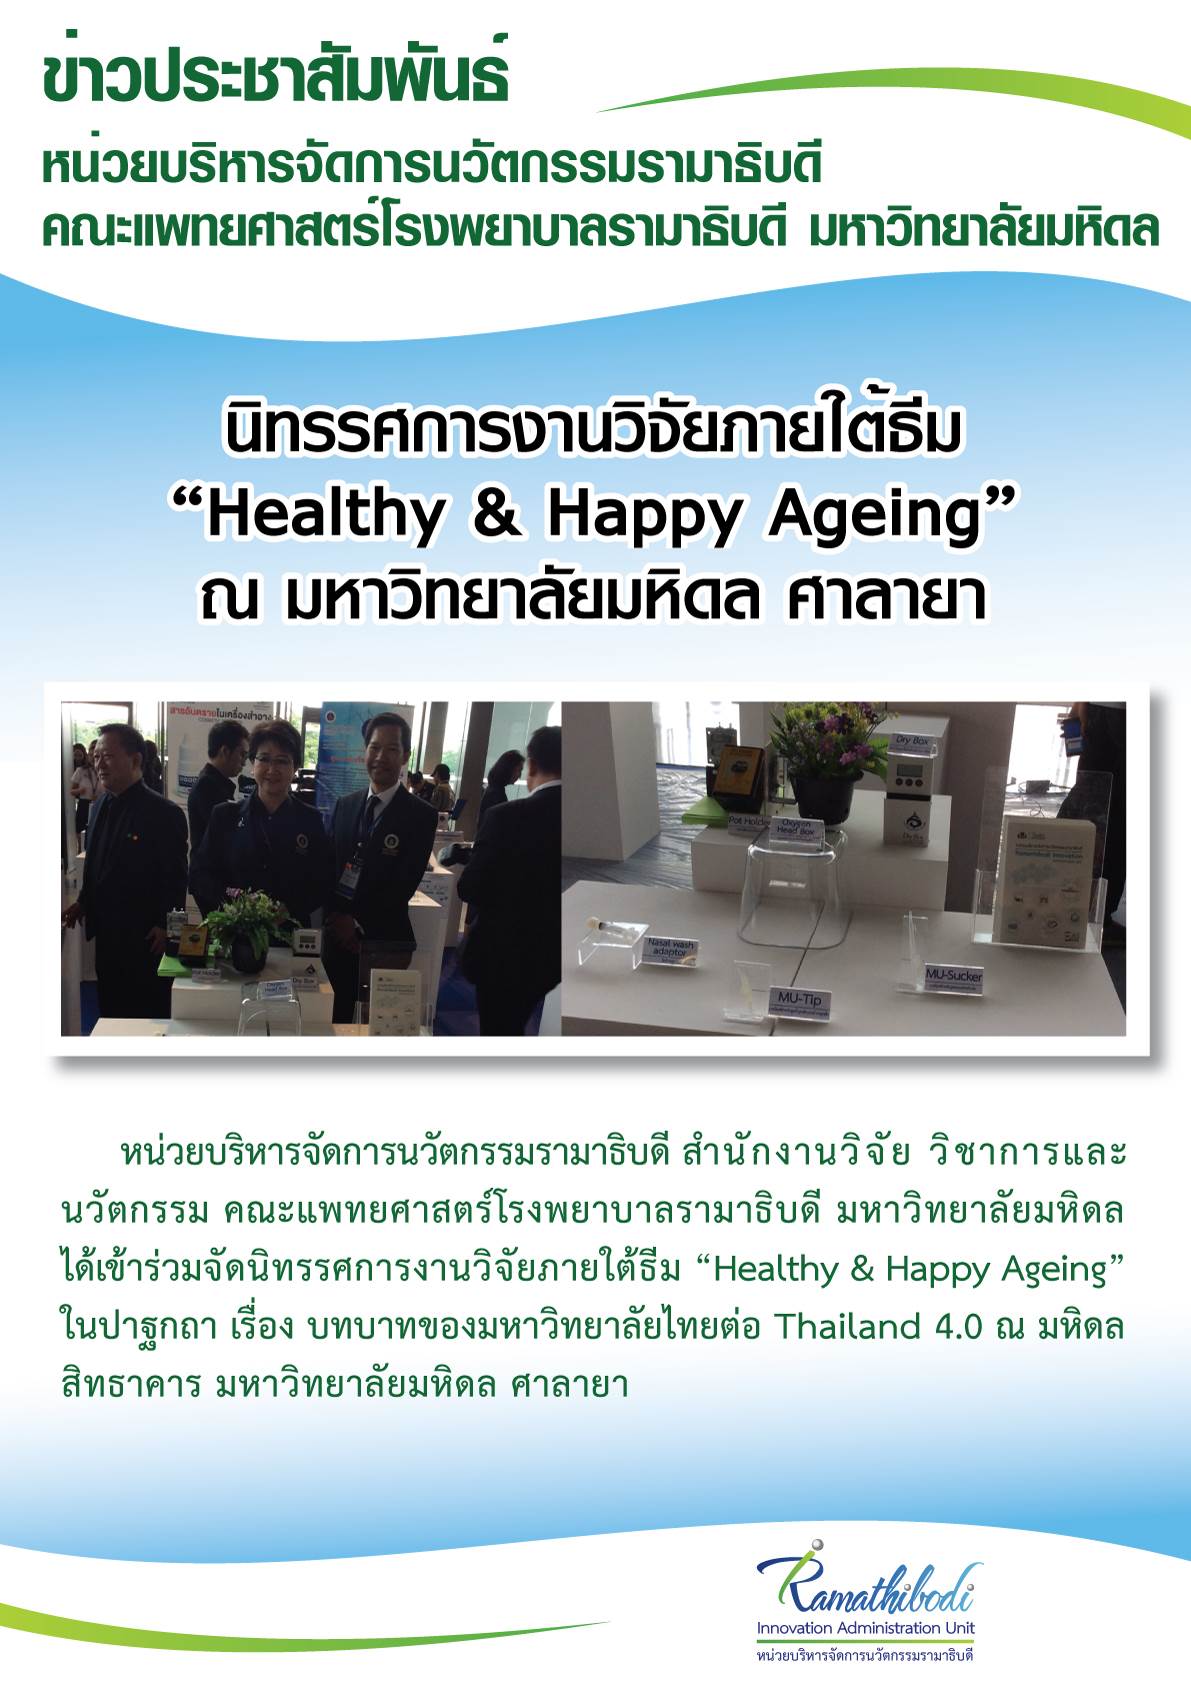 นิทรรศการงานวิจัยภายใต้ธีม “Healthy & Happy Ageing”